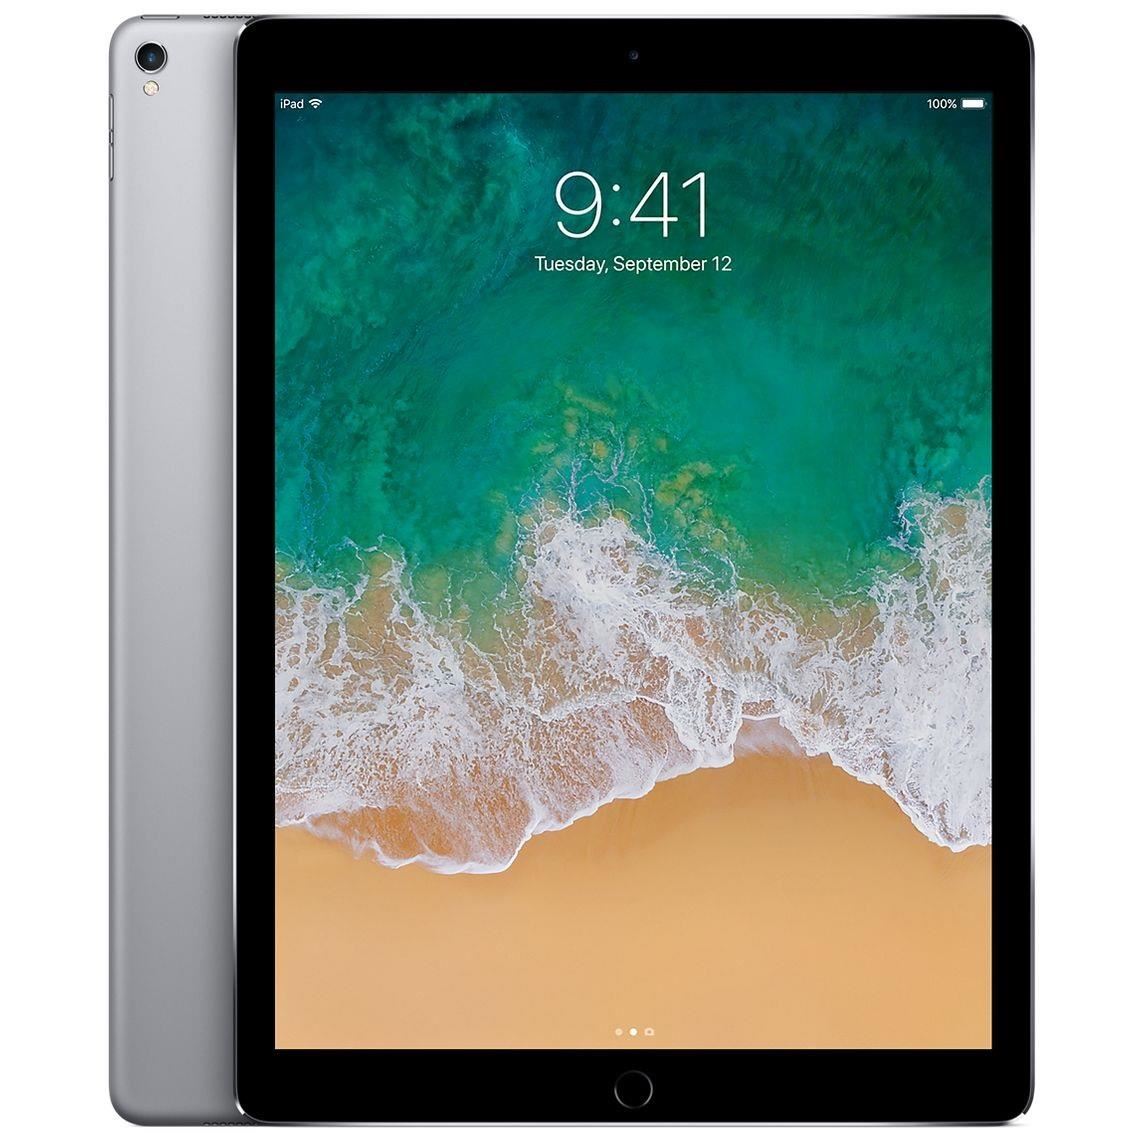 Apple iPad Pro 12.9 2nd Gen Wi-Fi + 4G Tablet Unlocked iOS